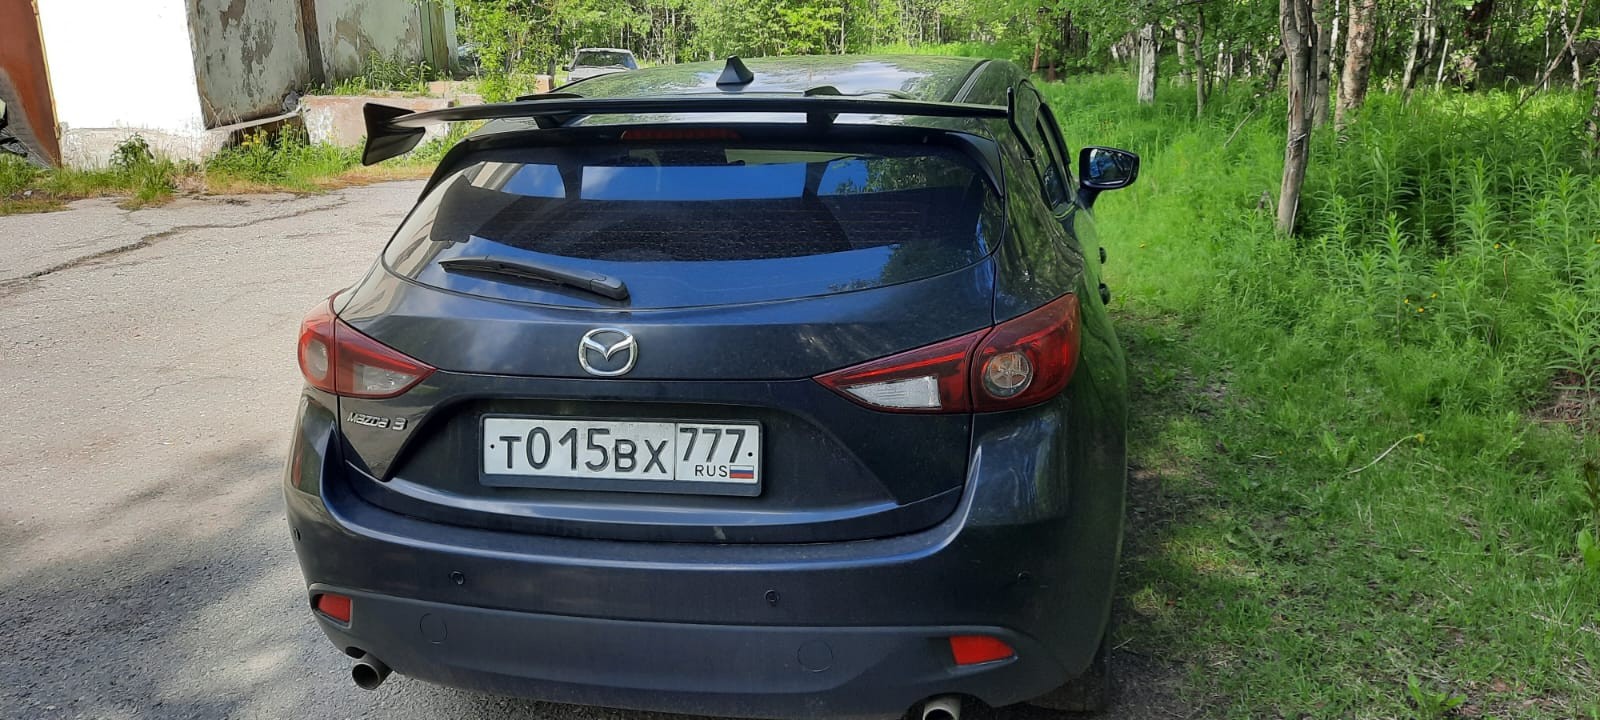 Легковой автомобиль Mazda 3, 2014 г.в., VIN JMZBM44Z231139728. Цвет черный, пробег по спидометру 686